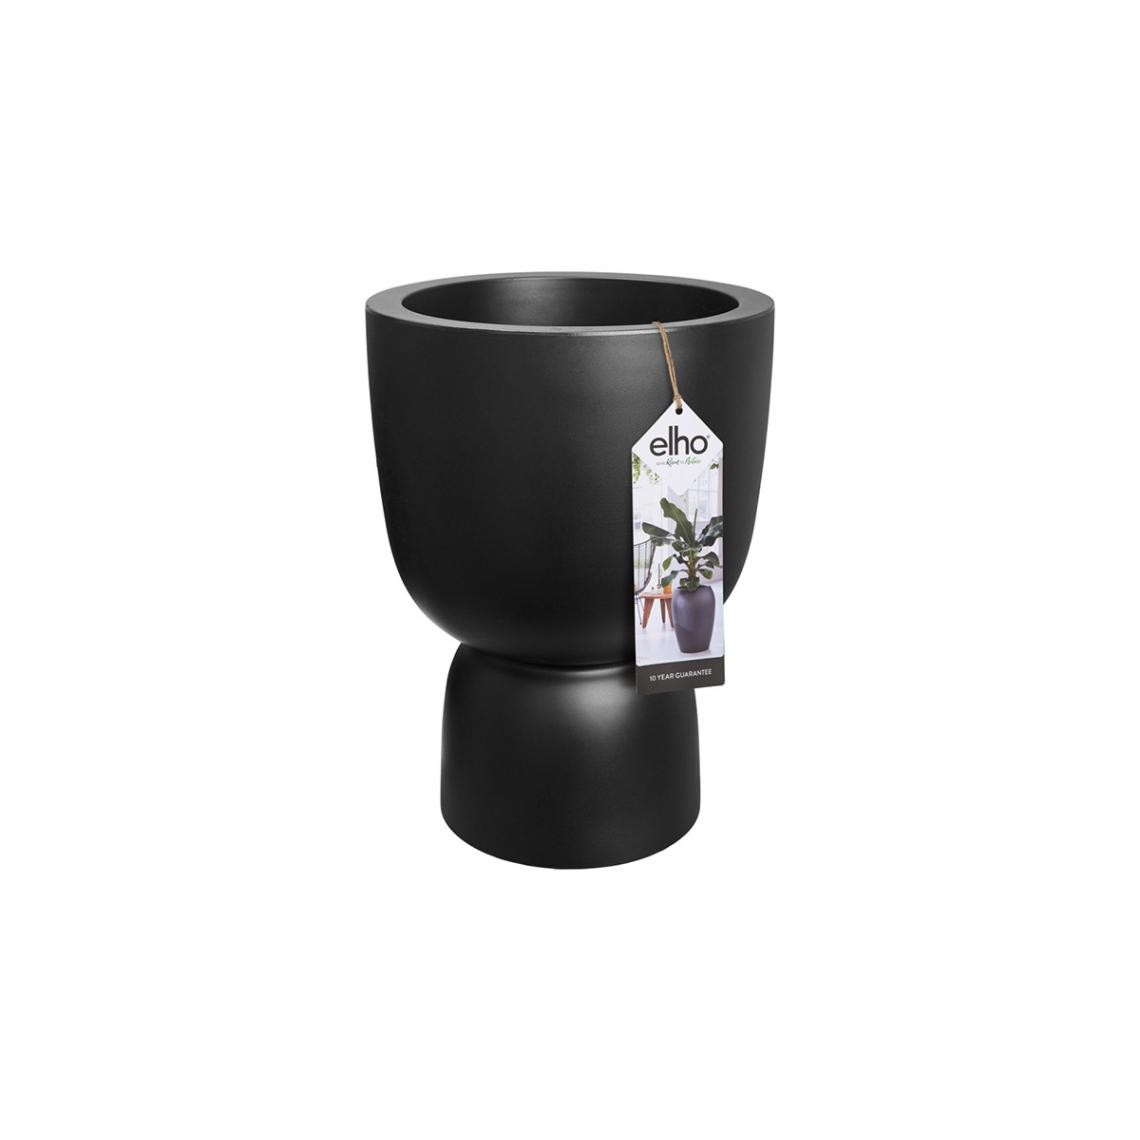 Elho - Pot de fleurs rond en plastique extérieur/intérieur Ø 35 cm Elho Pure Coupe noir - Poterie, bac à fleurs